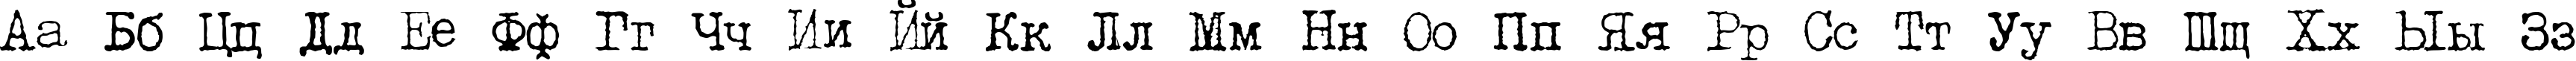 Пример написания английского алфавита шрифтом LetteraTrentadue